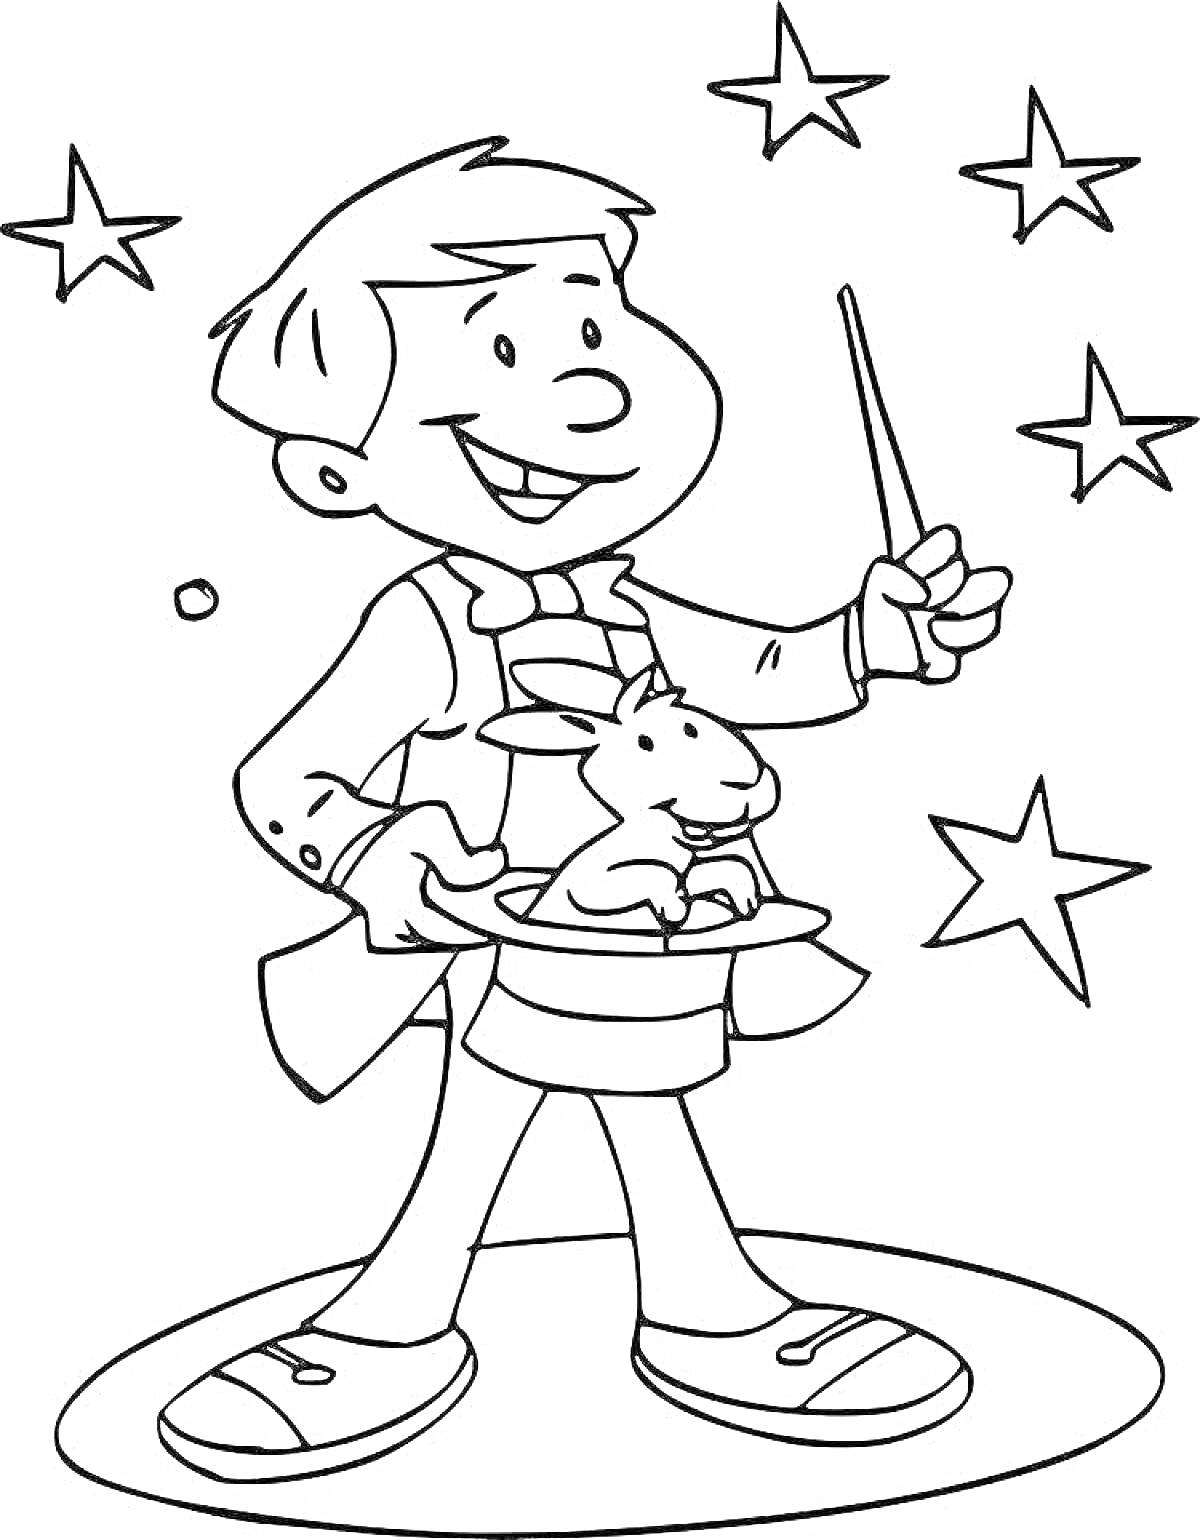 Раскраска Фокусник с волшебной палочкой, шляпой и кроликом, окружённый звёздами